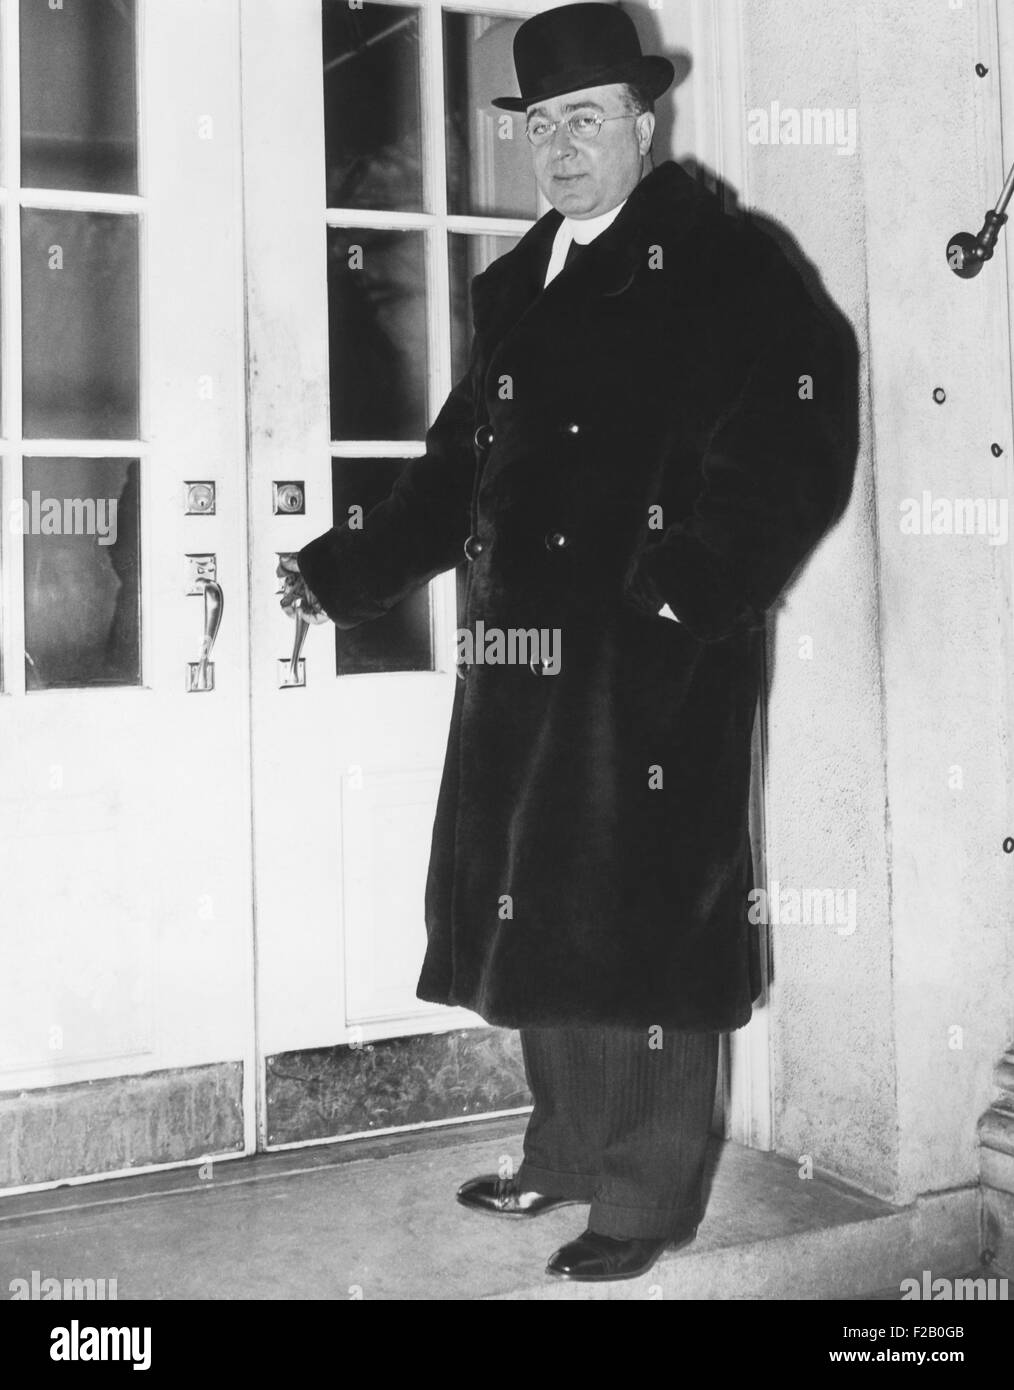 Le Père Charles Coughlin, prêtre de radio à la Maison Blanche, après une rencontre avec FDR, le 8 janvier 1936. Par ce temps, Coughlin s'oriente vers une politique monétaire populiste, abolition de la Réserve fédérale et de réquisition de richesses en temps de guerre. En 1938, il a défendu la violence nazie, a soutenu que la Kristallnacht était justifiée en tant que représailles pour les Juifs la persécution des chrétiens. Comme il se dirigeait vers la frange radicale, il a perdu sa base de masse. CSU (2015  9 1136) Banque D'Images